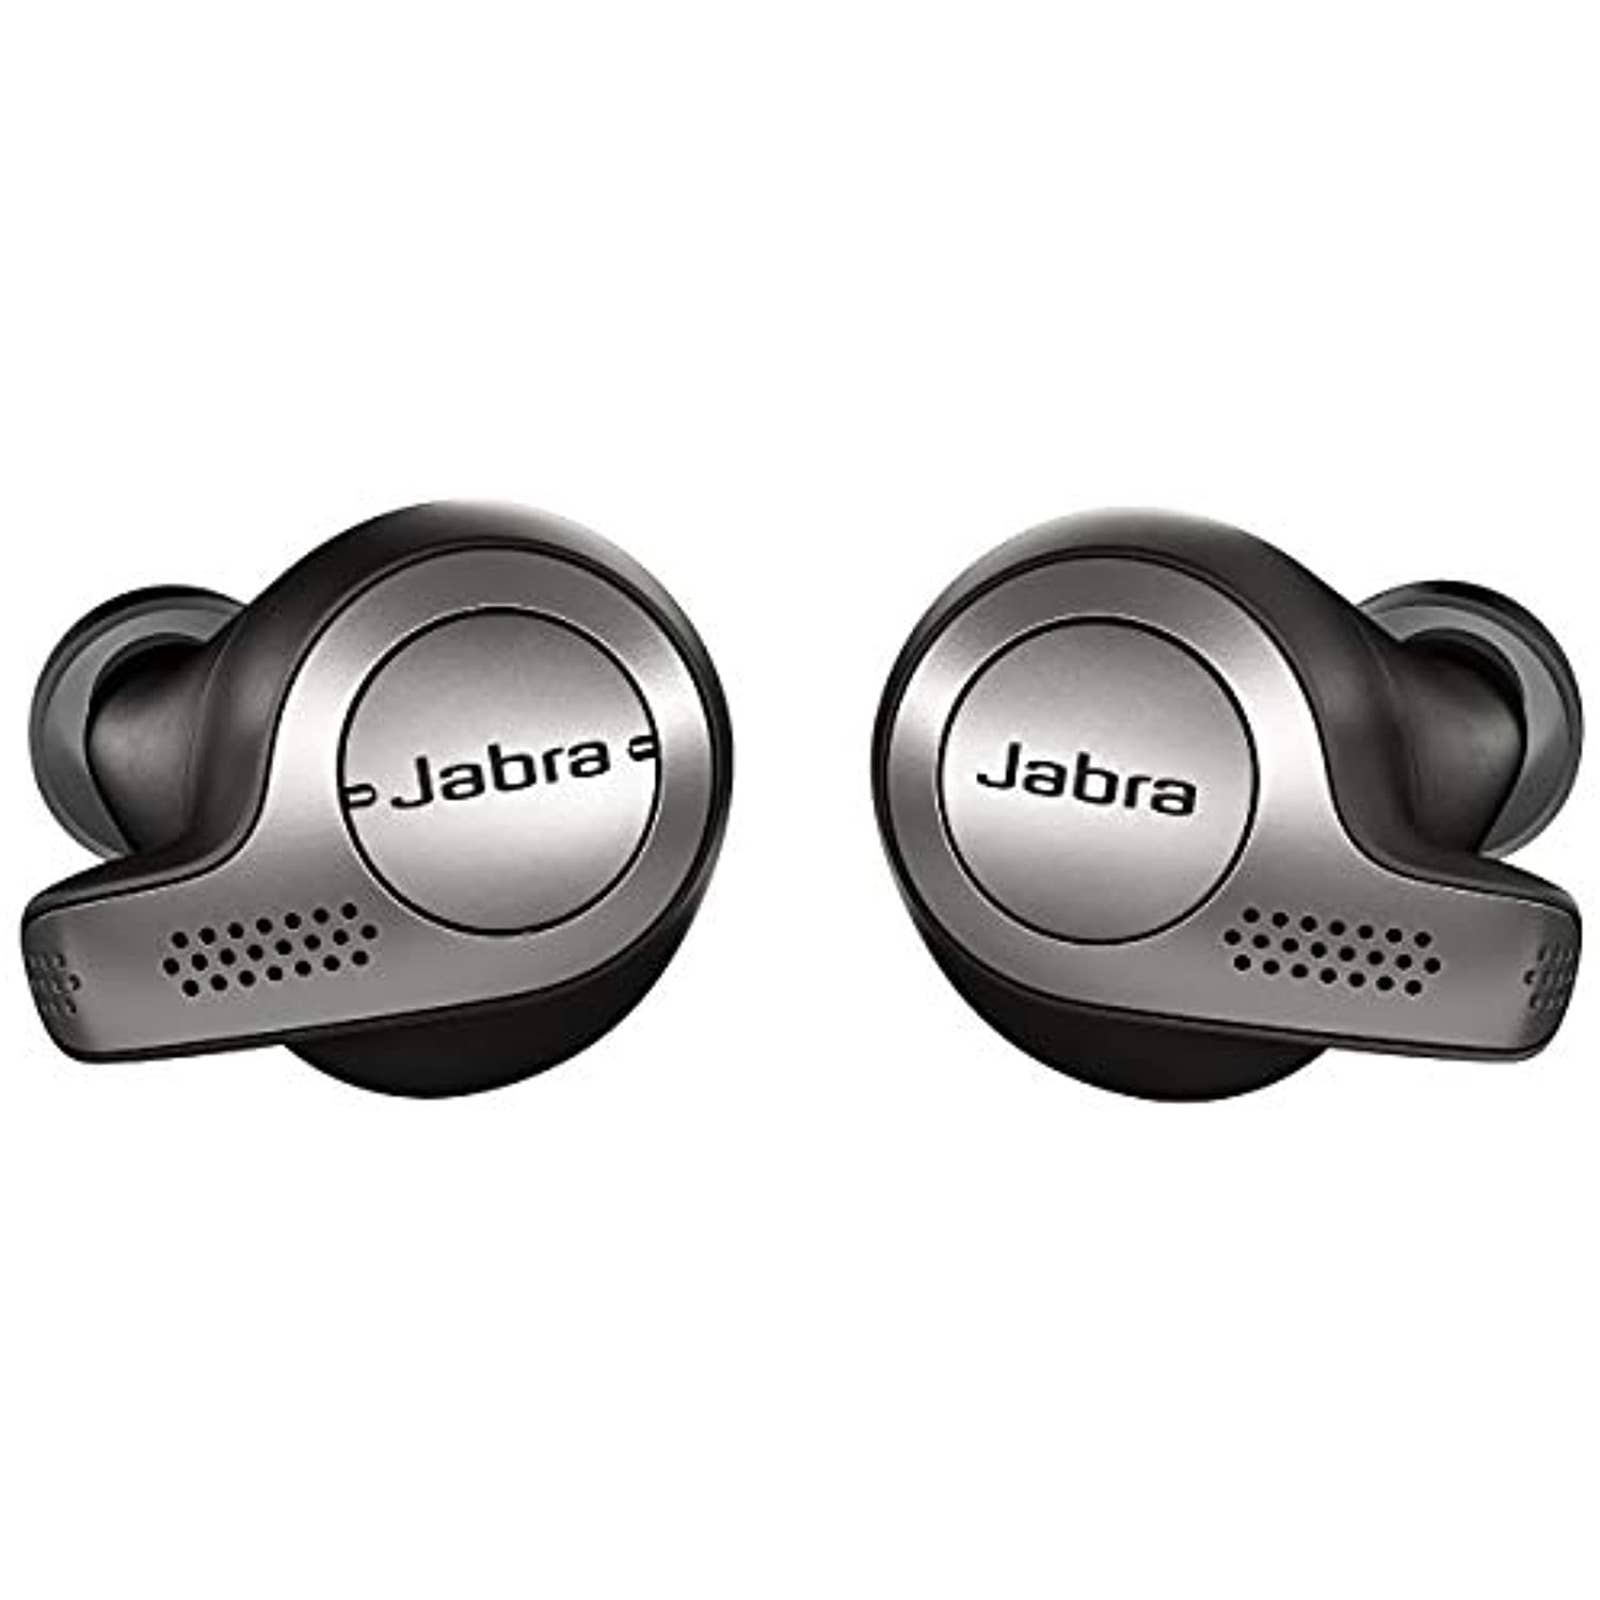 Jabra - 100-99000000-02 Elite 65t True Wireless Earbud Headphones - Titanium Black